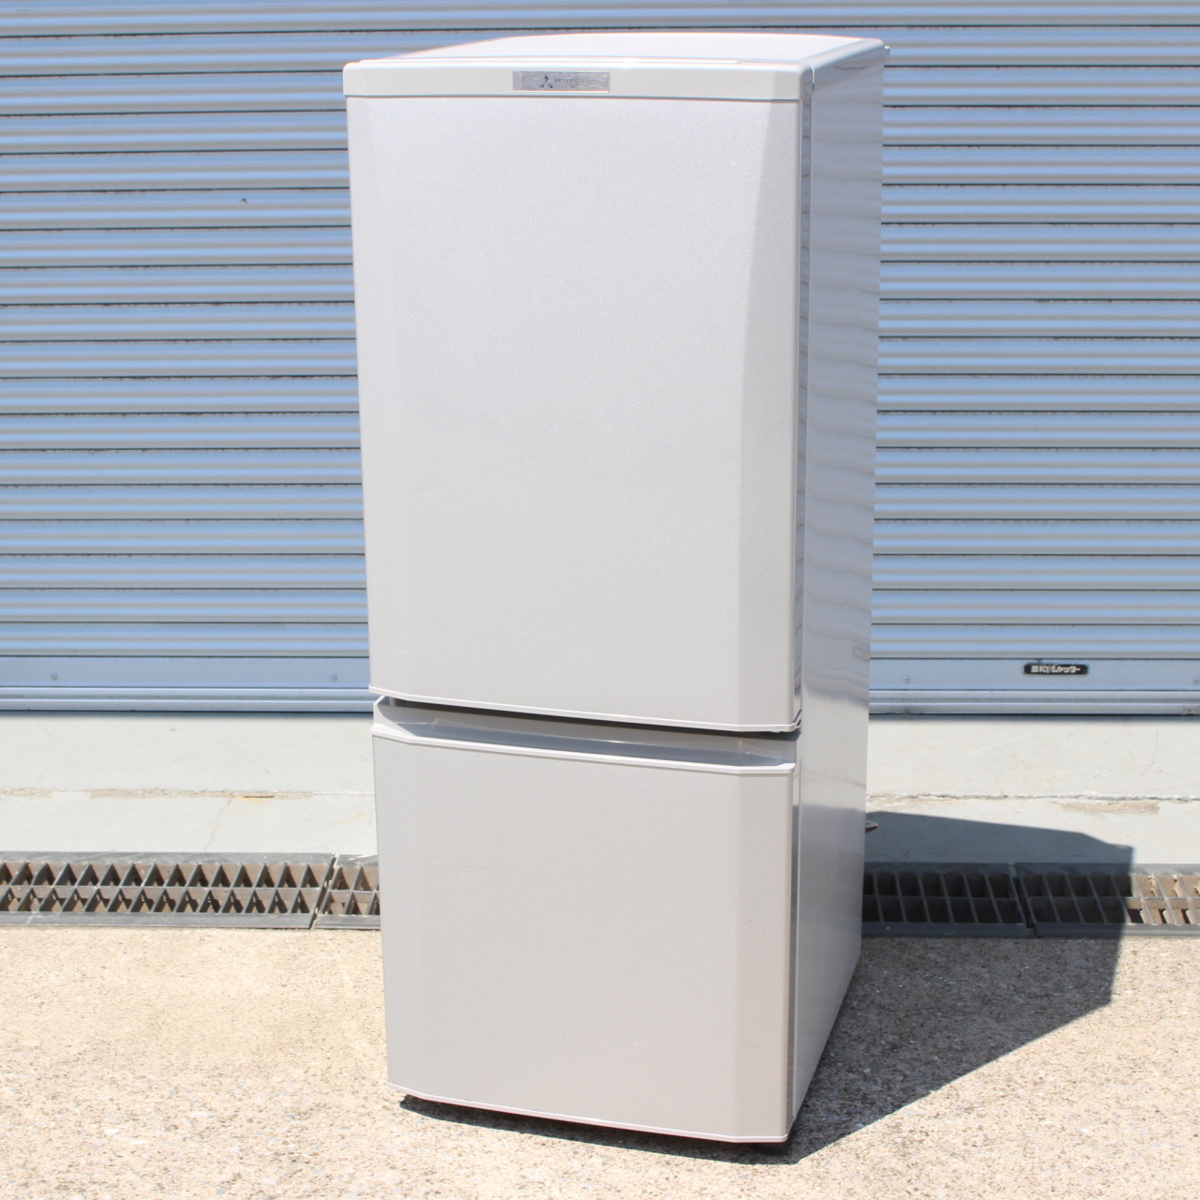 東京都品川区にて 三菱 冷蔵庫 MR-P15C  2018年製 を出張買取させて頂きました。